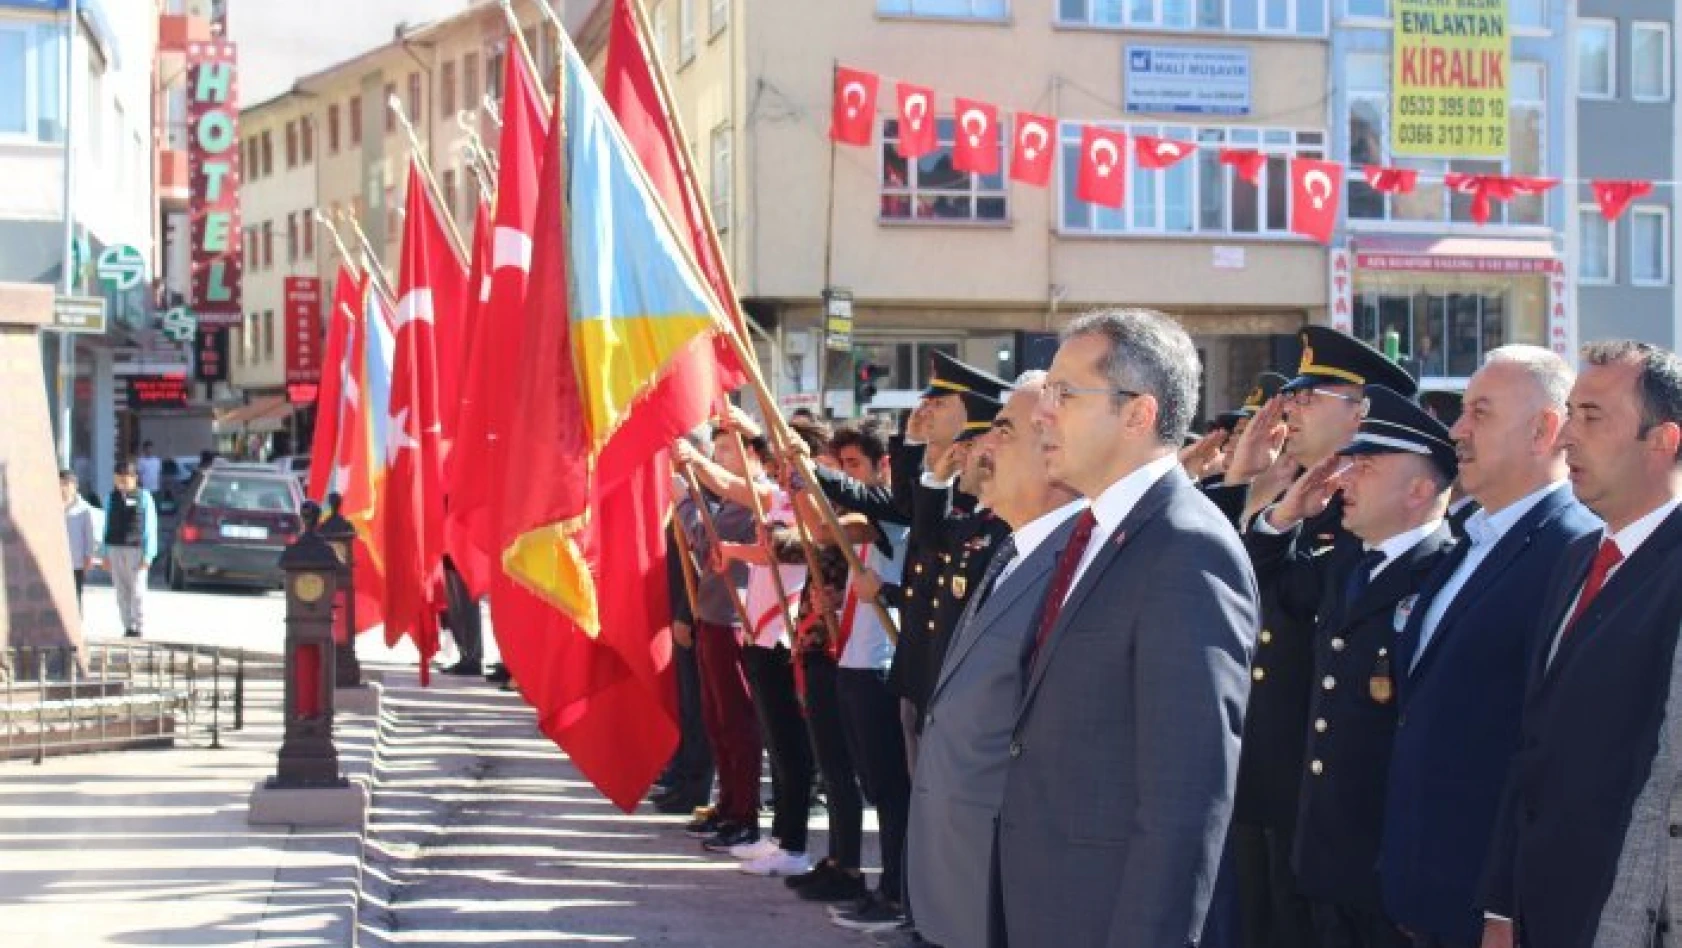 29 Ekim Cumhuriyet Bayramı Tosya'da kutlanıyor